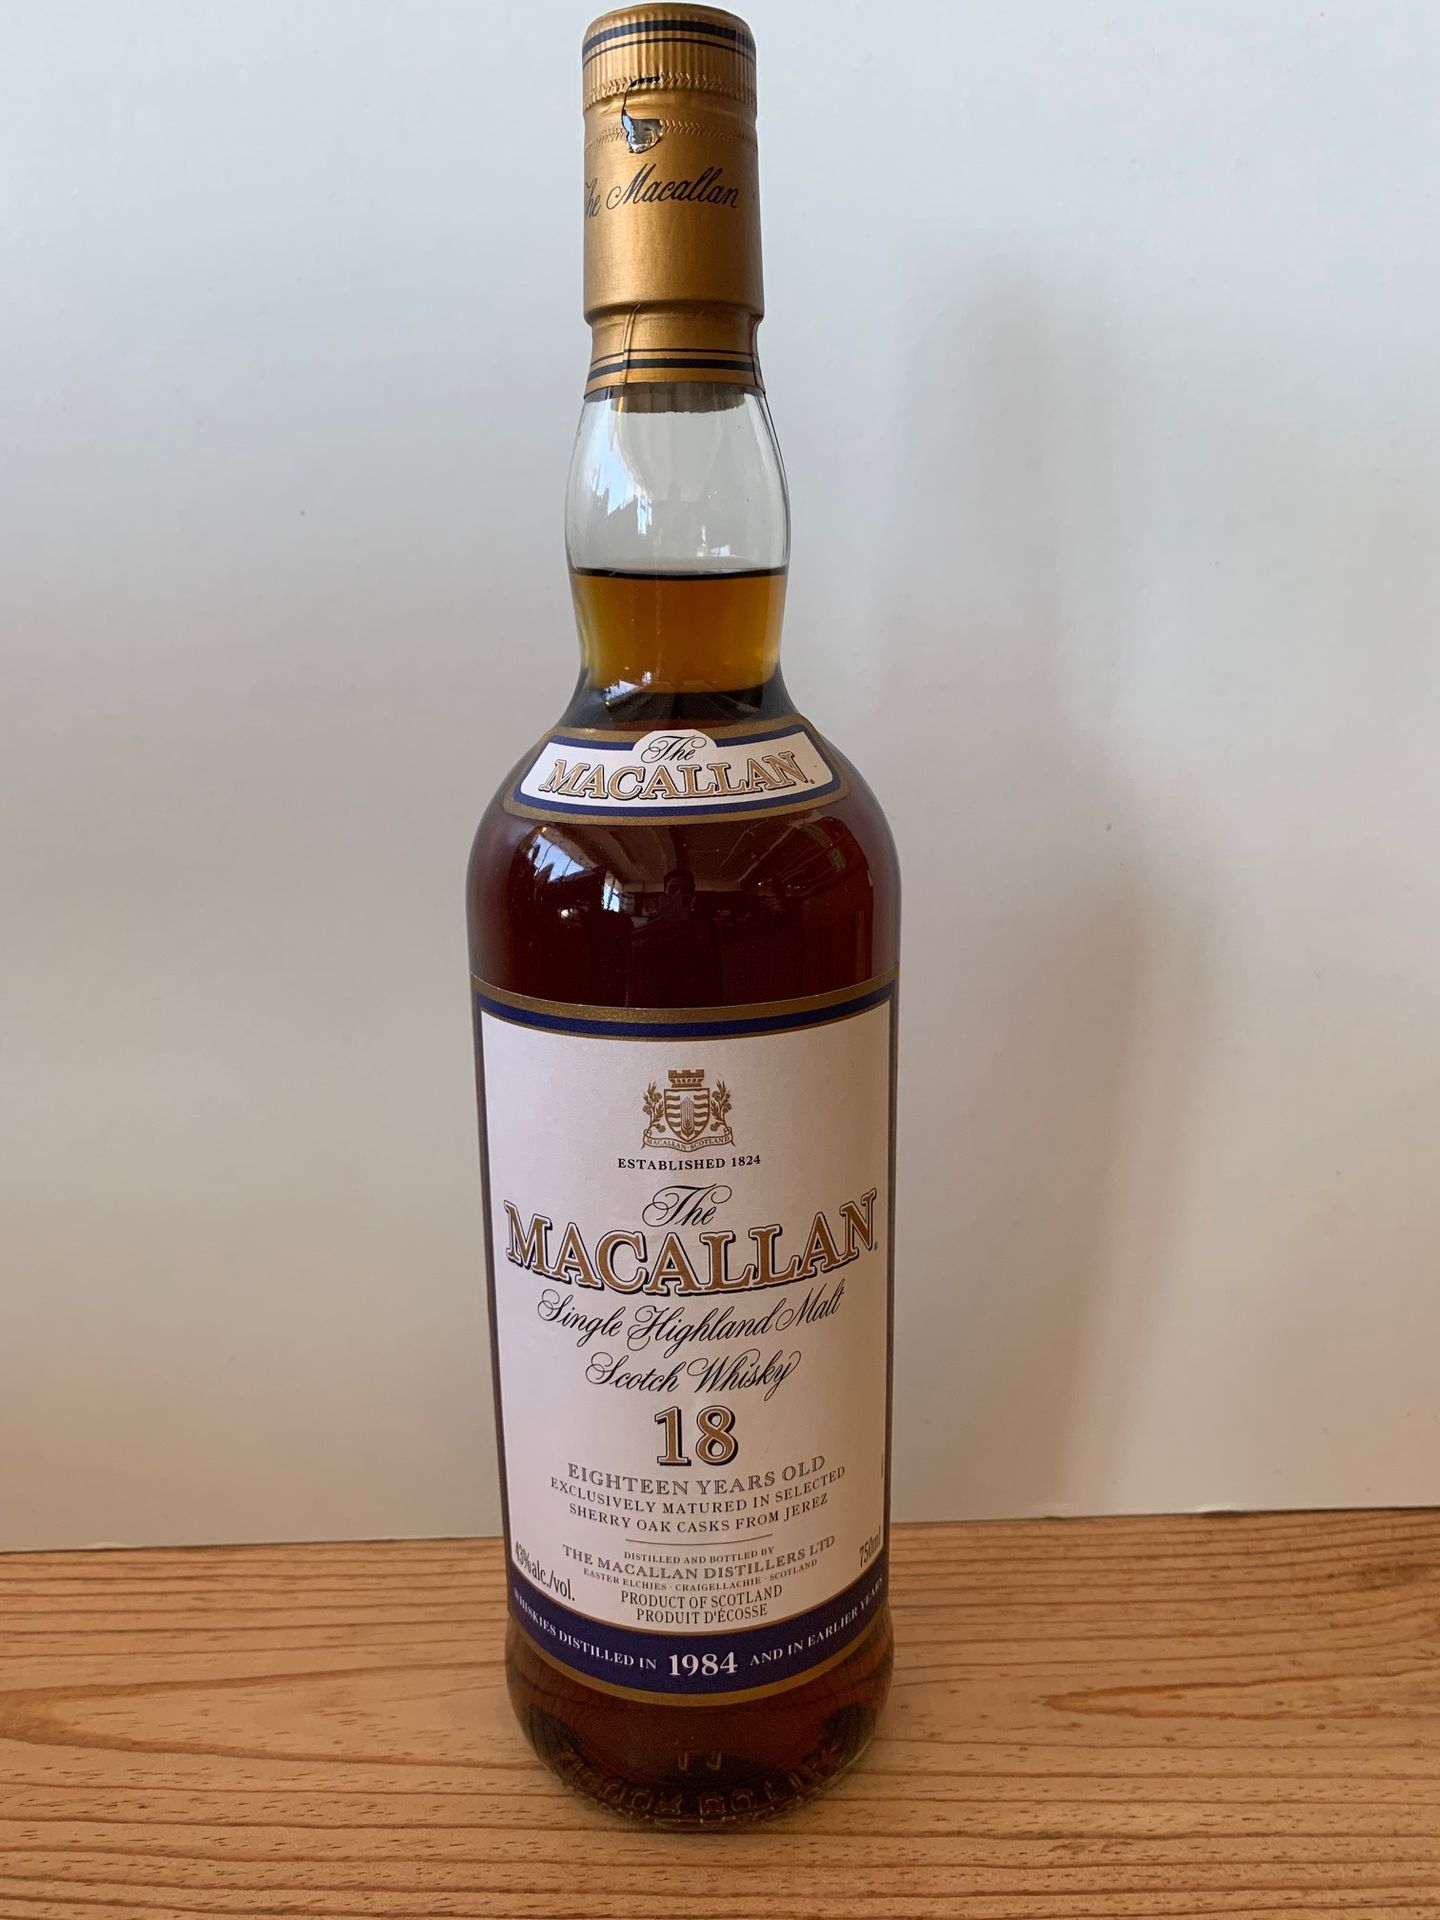 Null 1 B whisky de malta The Macallan, destilado en 1984, 18 años, barricas de r&hellip;